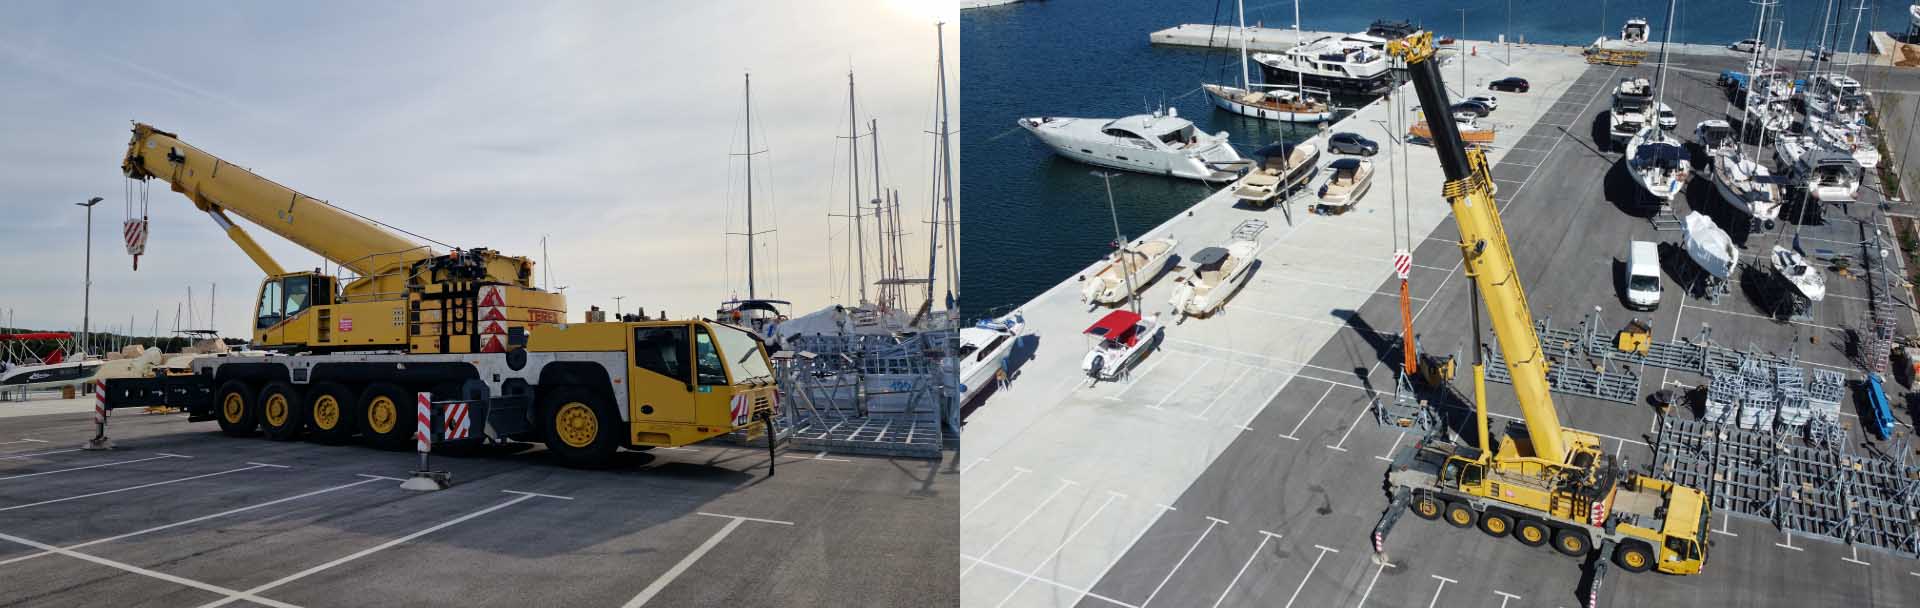 New 200t auto-crane in Marina Polesana